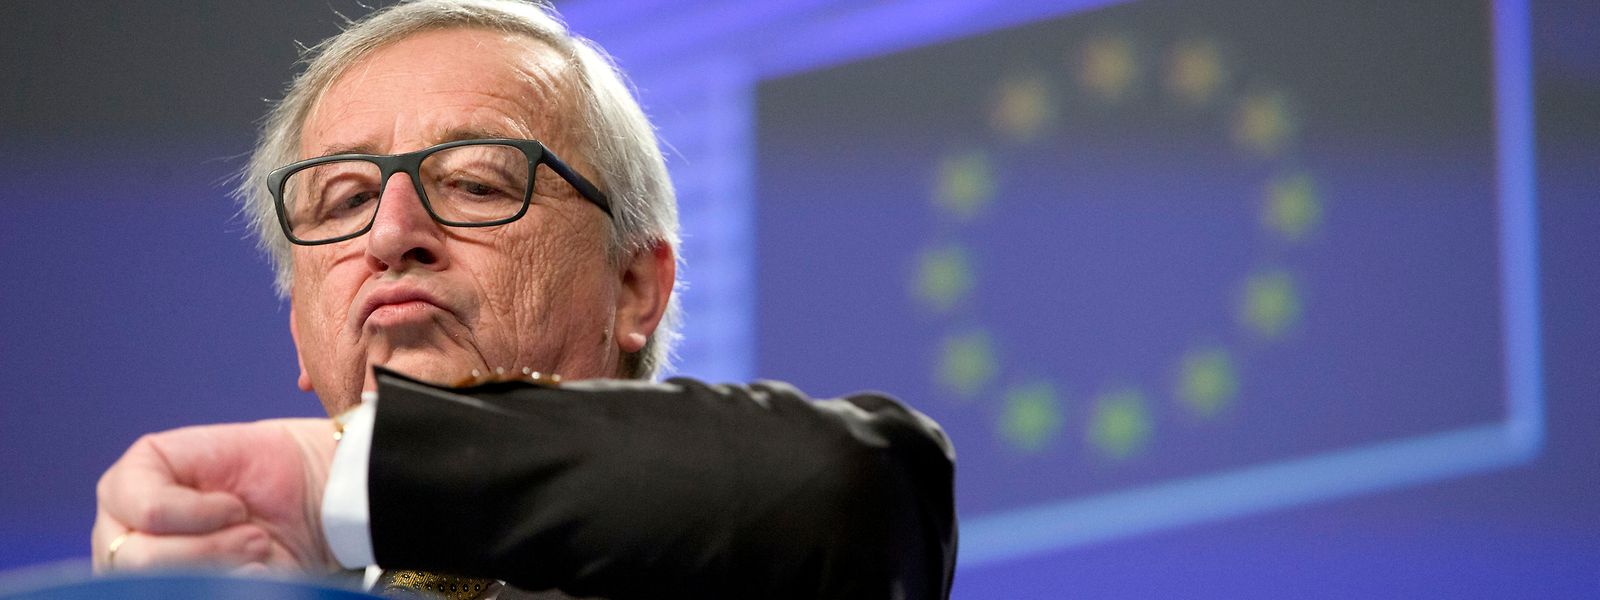 Ce mercredi, Jean-Claude Juncker, le président de la Commission, lancera un nouvel appel aux Etats pour qu’ils se préparent à l’absence d’accord final avec Londres.